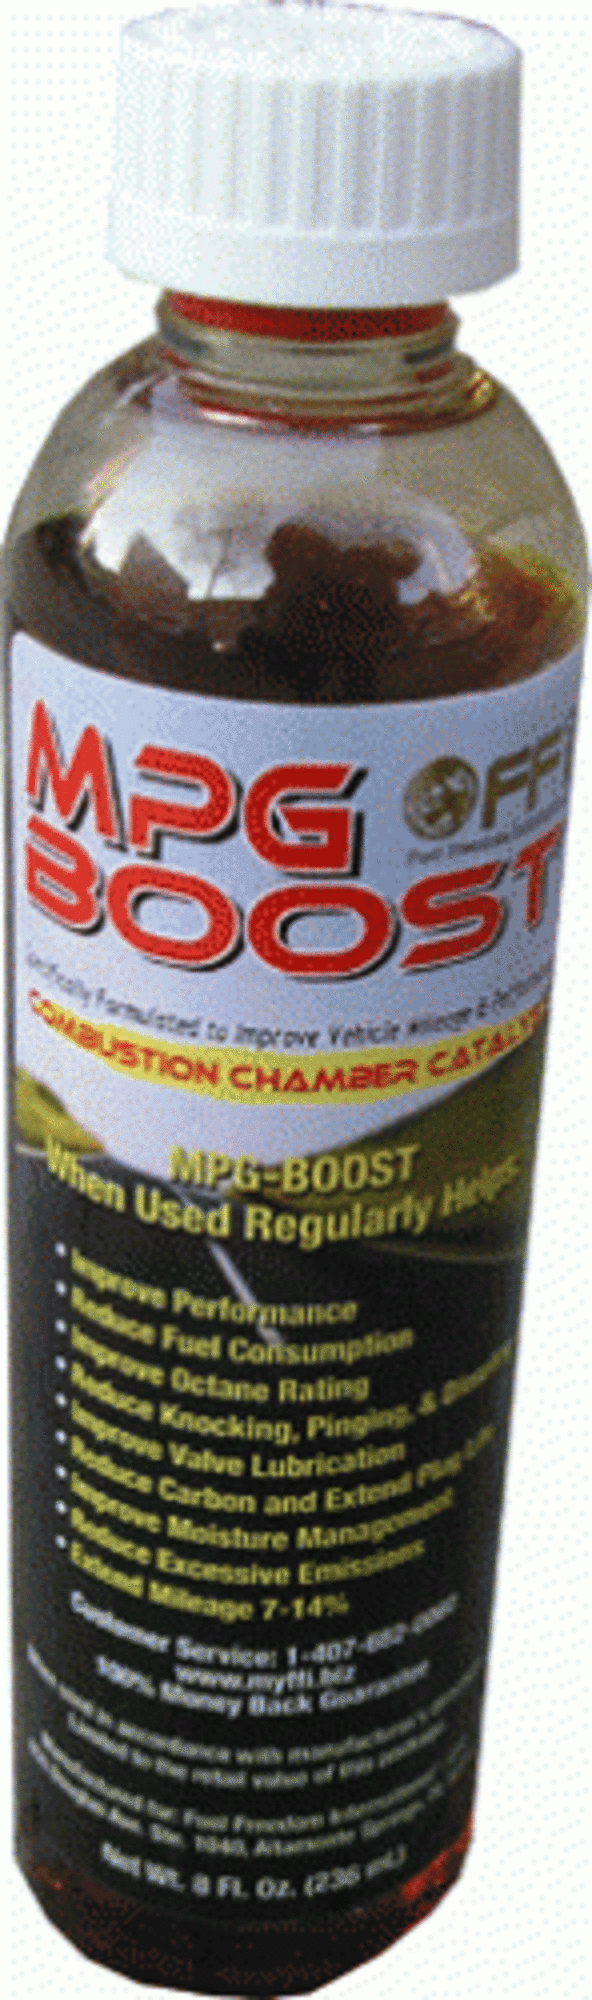 MPG-Caps биокатализатор для экономии топлива до 30%